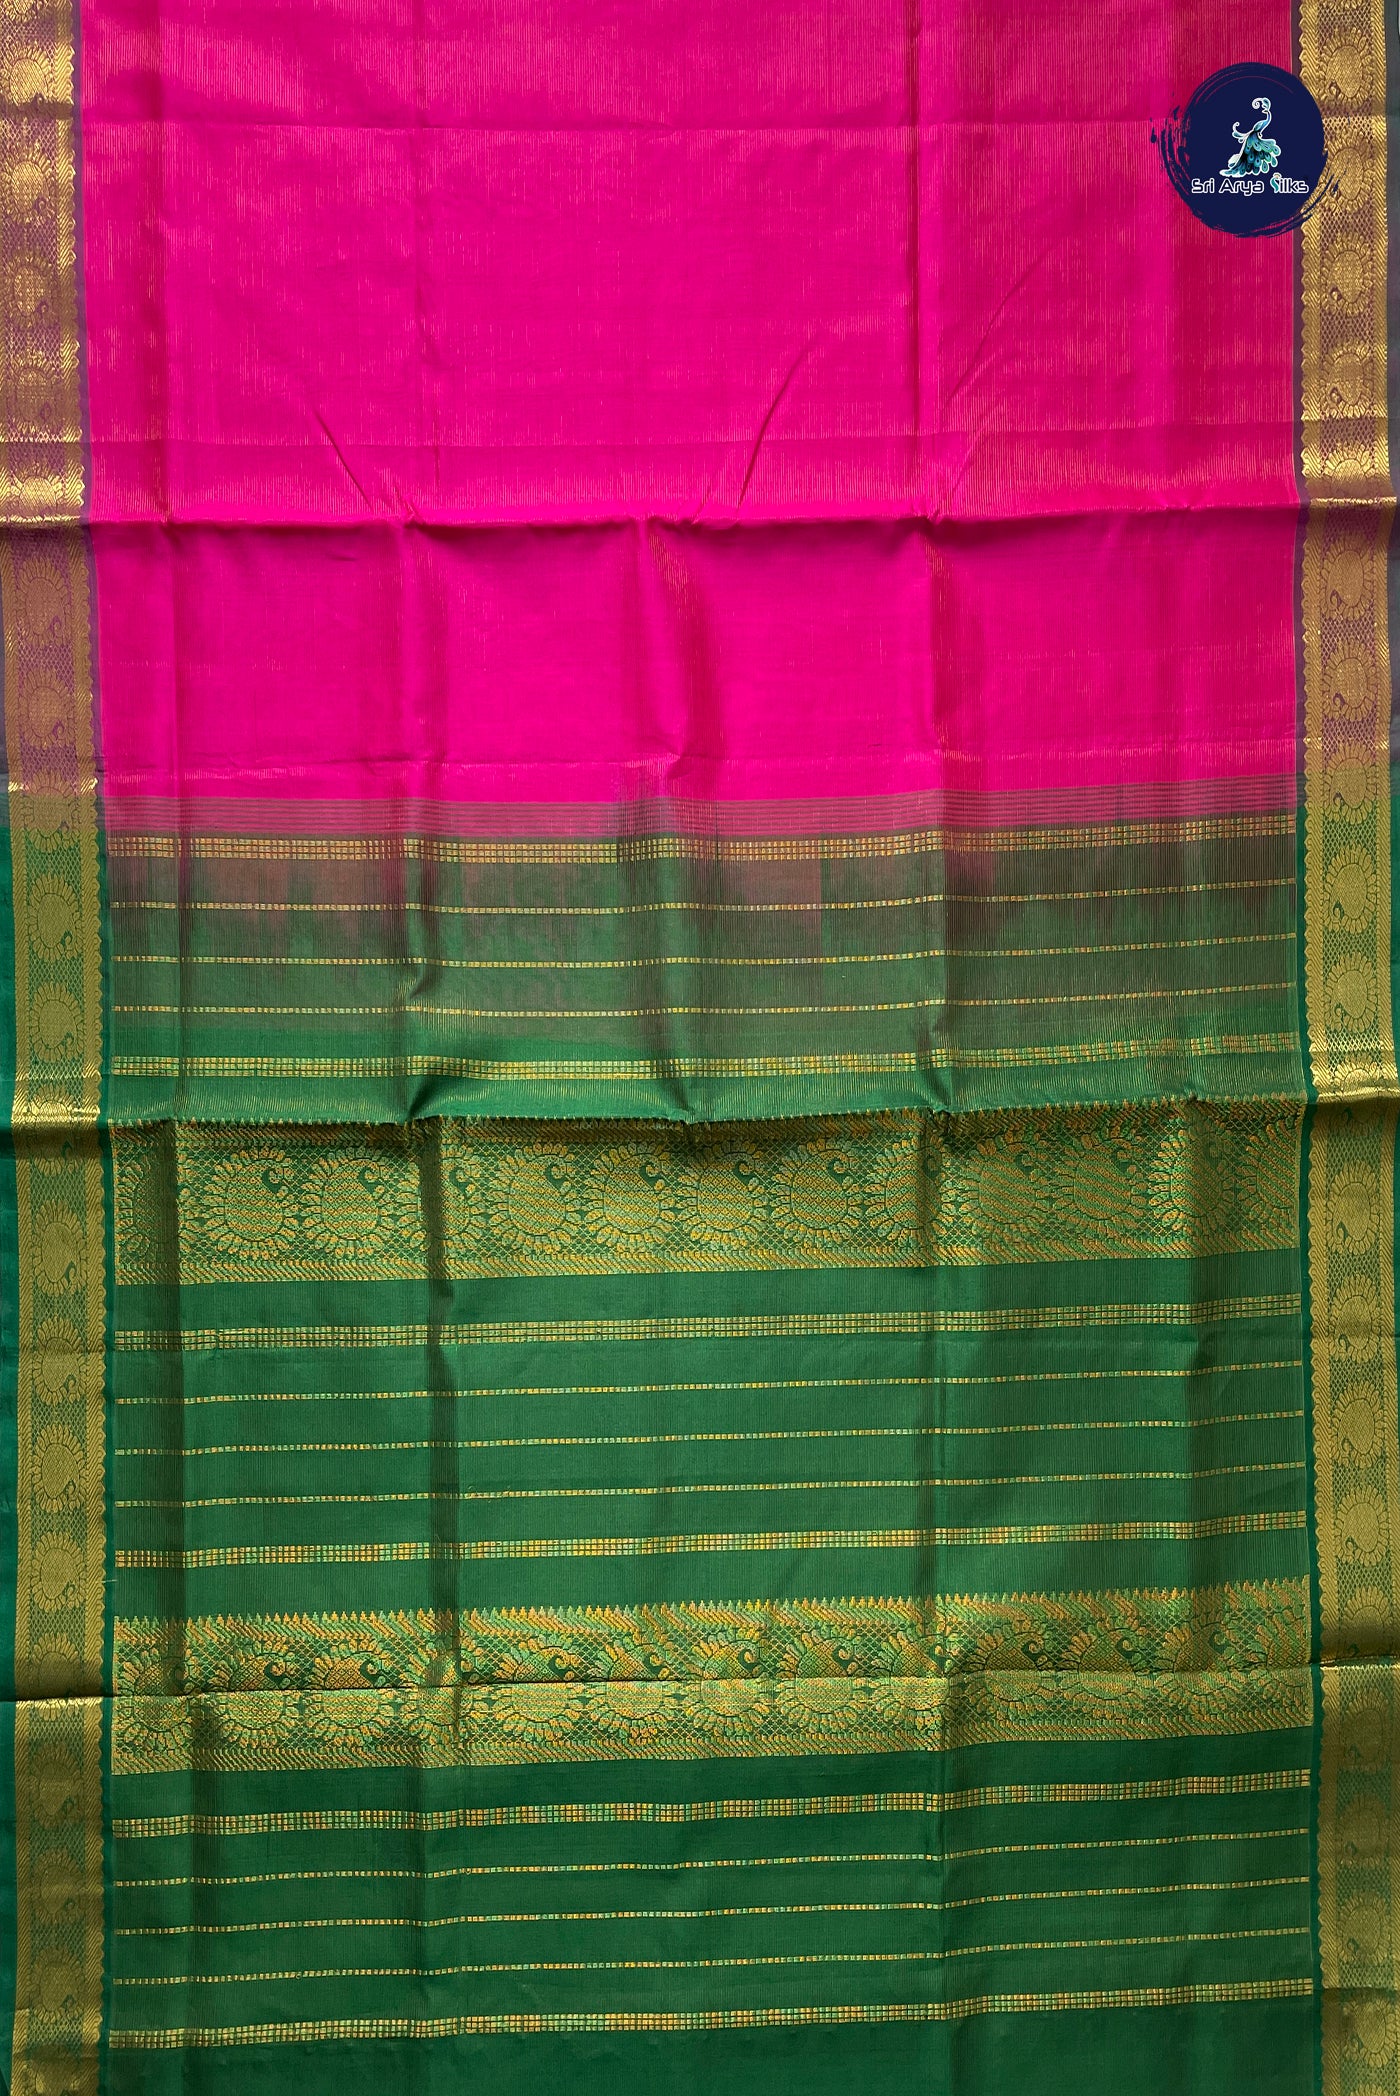 Magenta Pink Vaira Oosi Silk Cotton Saree With Vaira Oosi Pattern